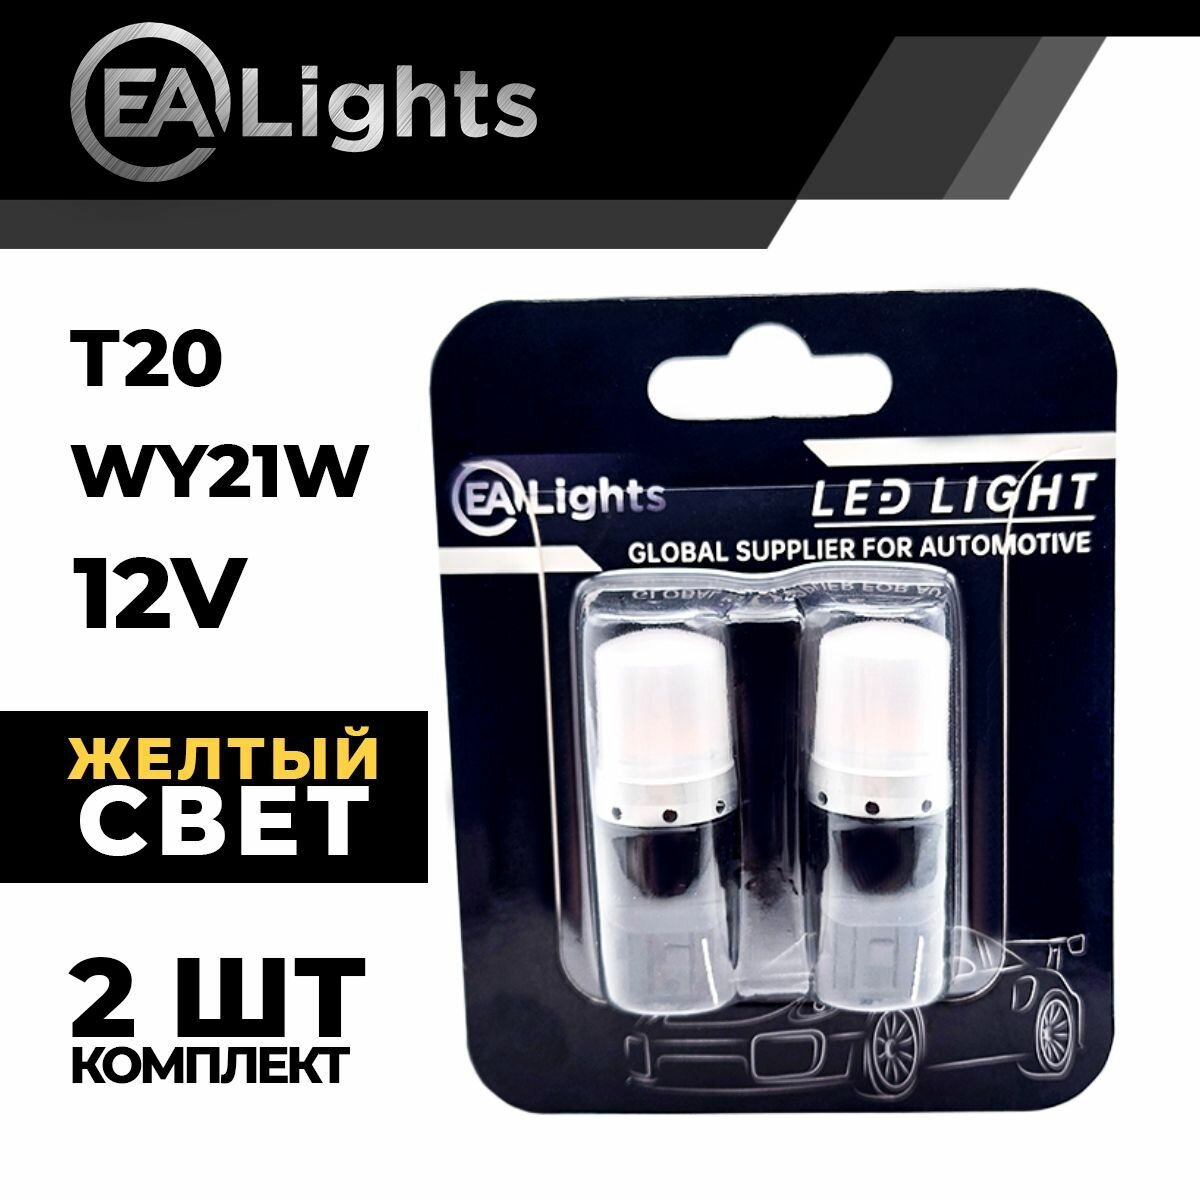 Автомобильная светодиодная LED лампа T20 WY21W (чип 2835-9) для указателей поворота, 12в желтый свет, 2 шт